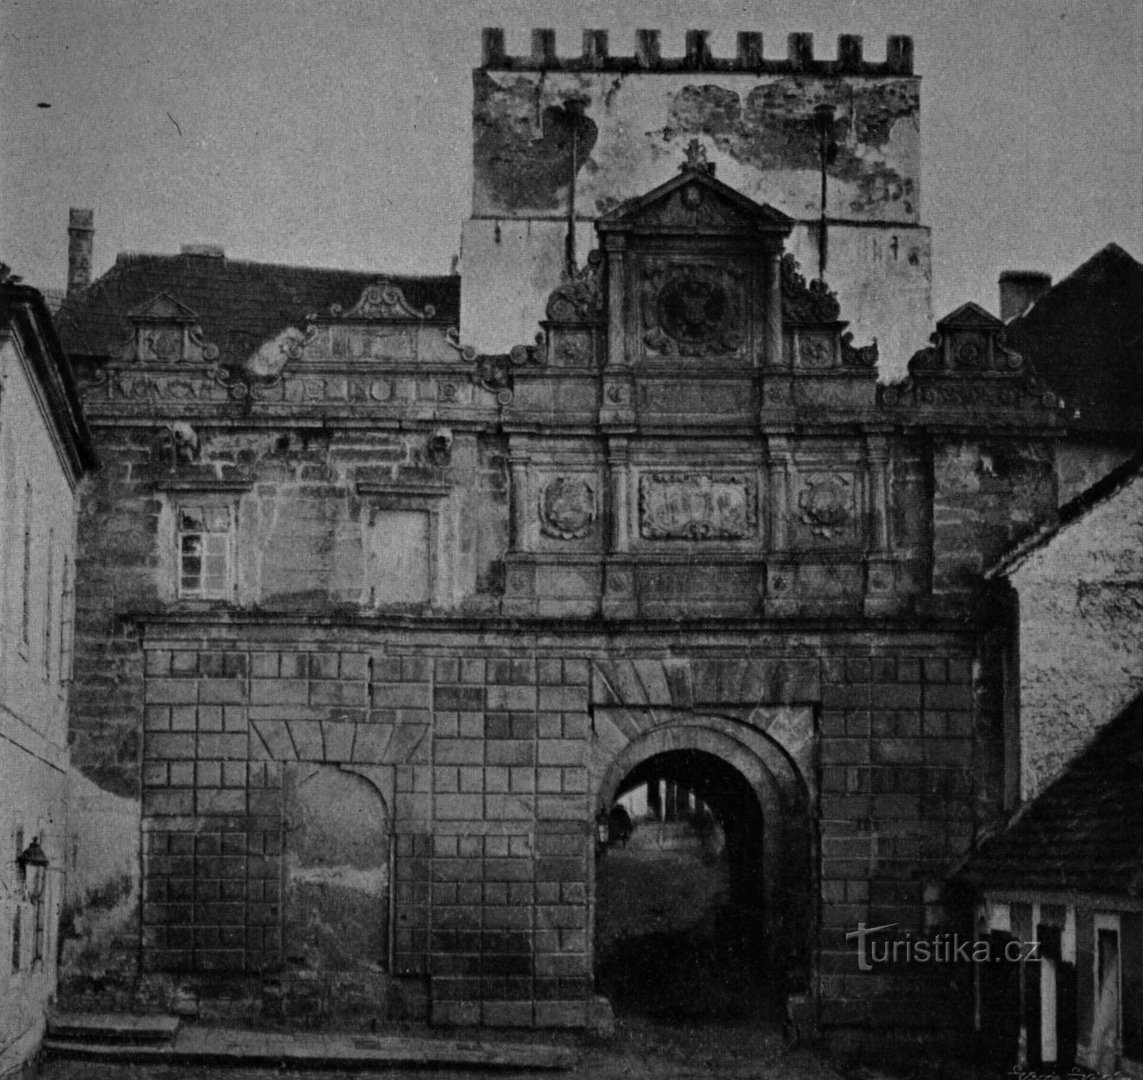 Královéhradecká Puerta de Praga poco antes de su demolición